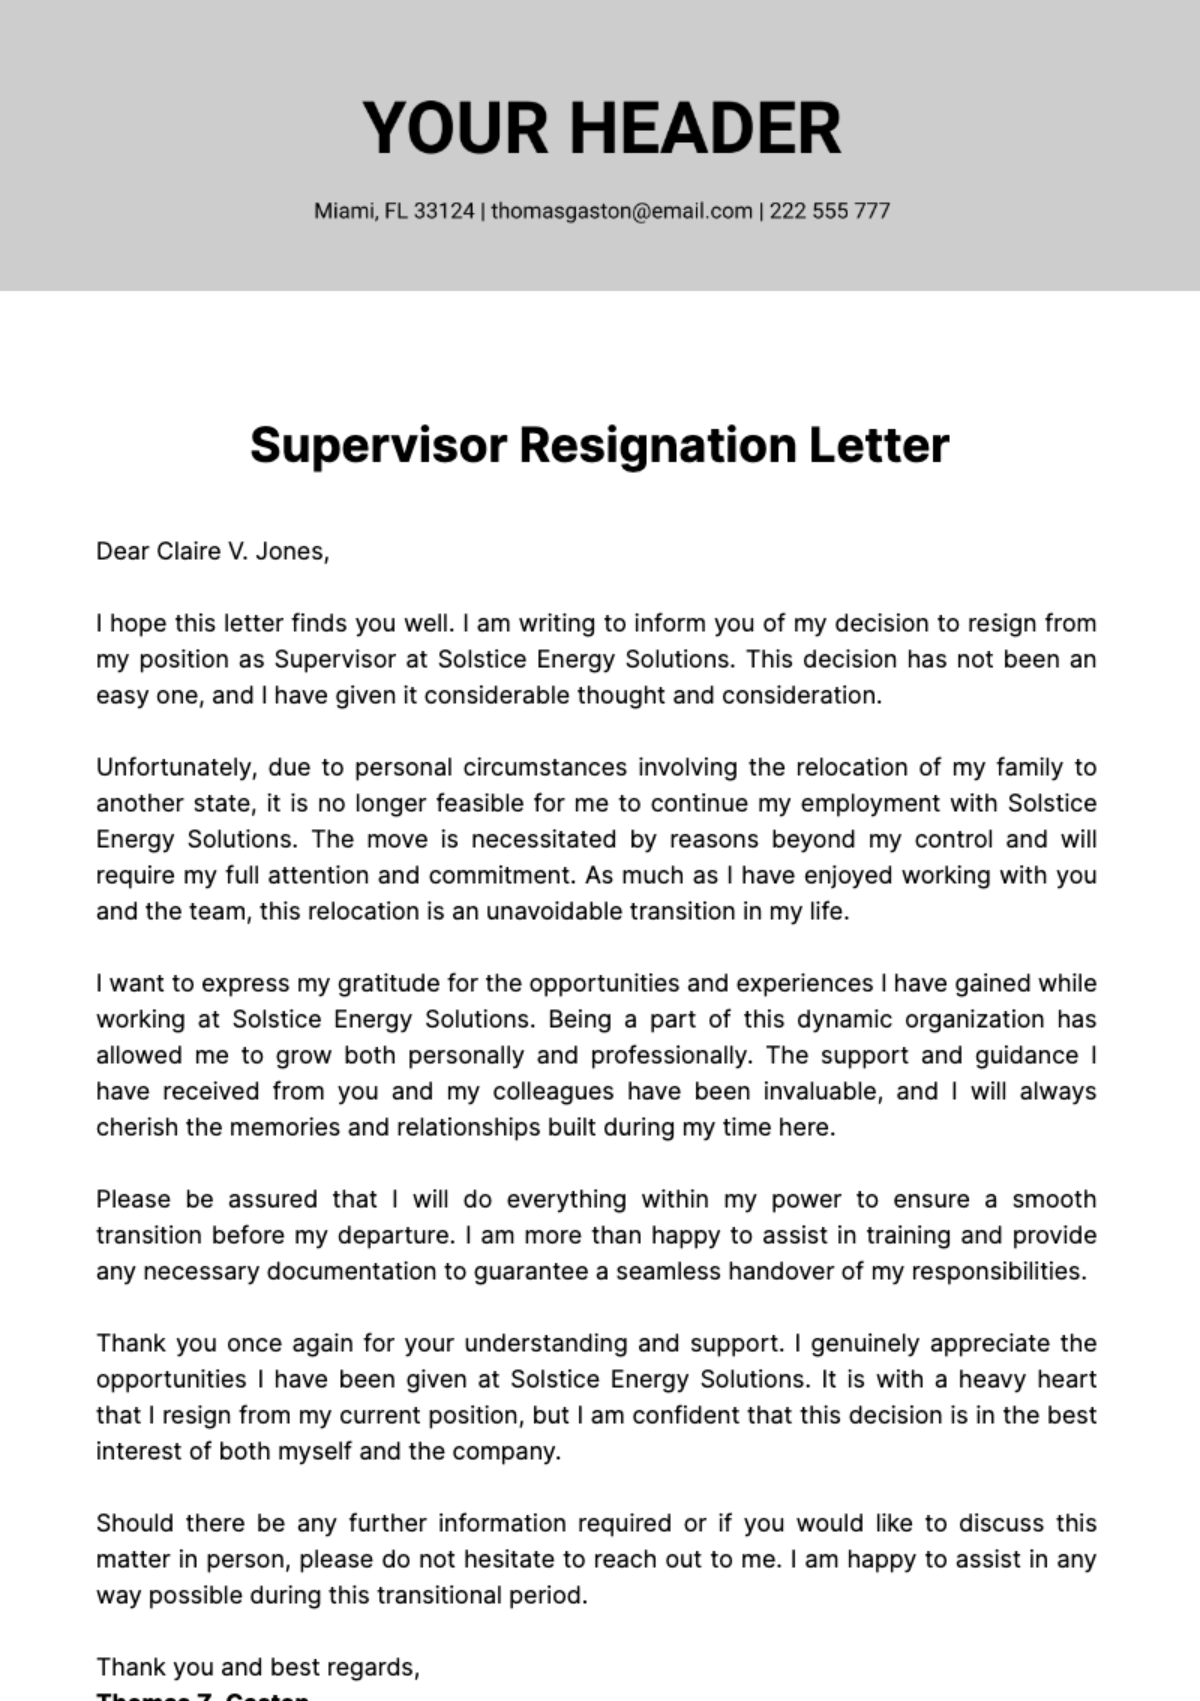 Free Supervisor Resignation Letter  Template